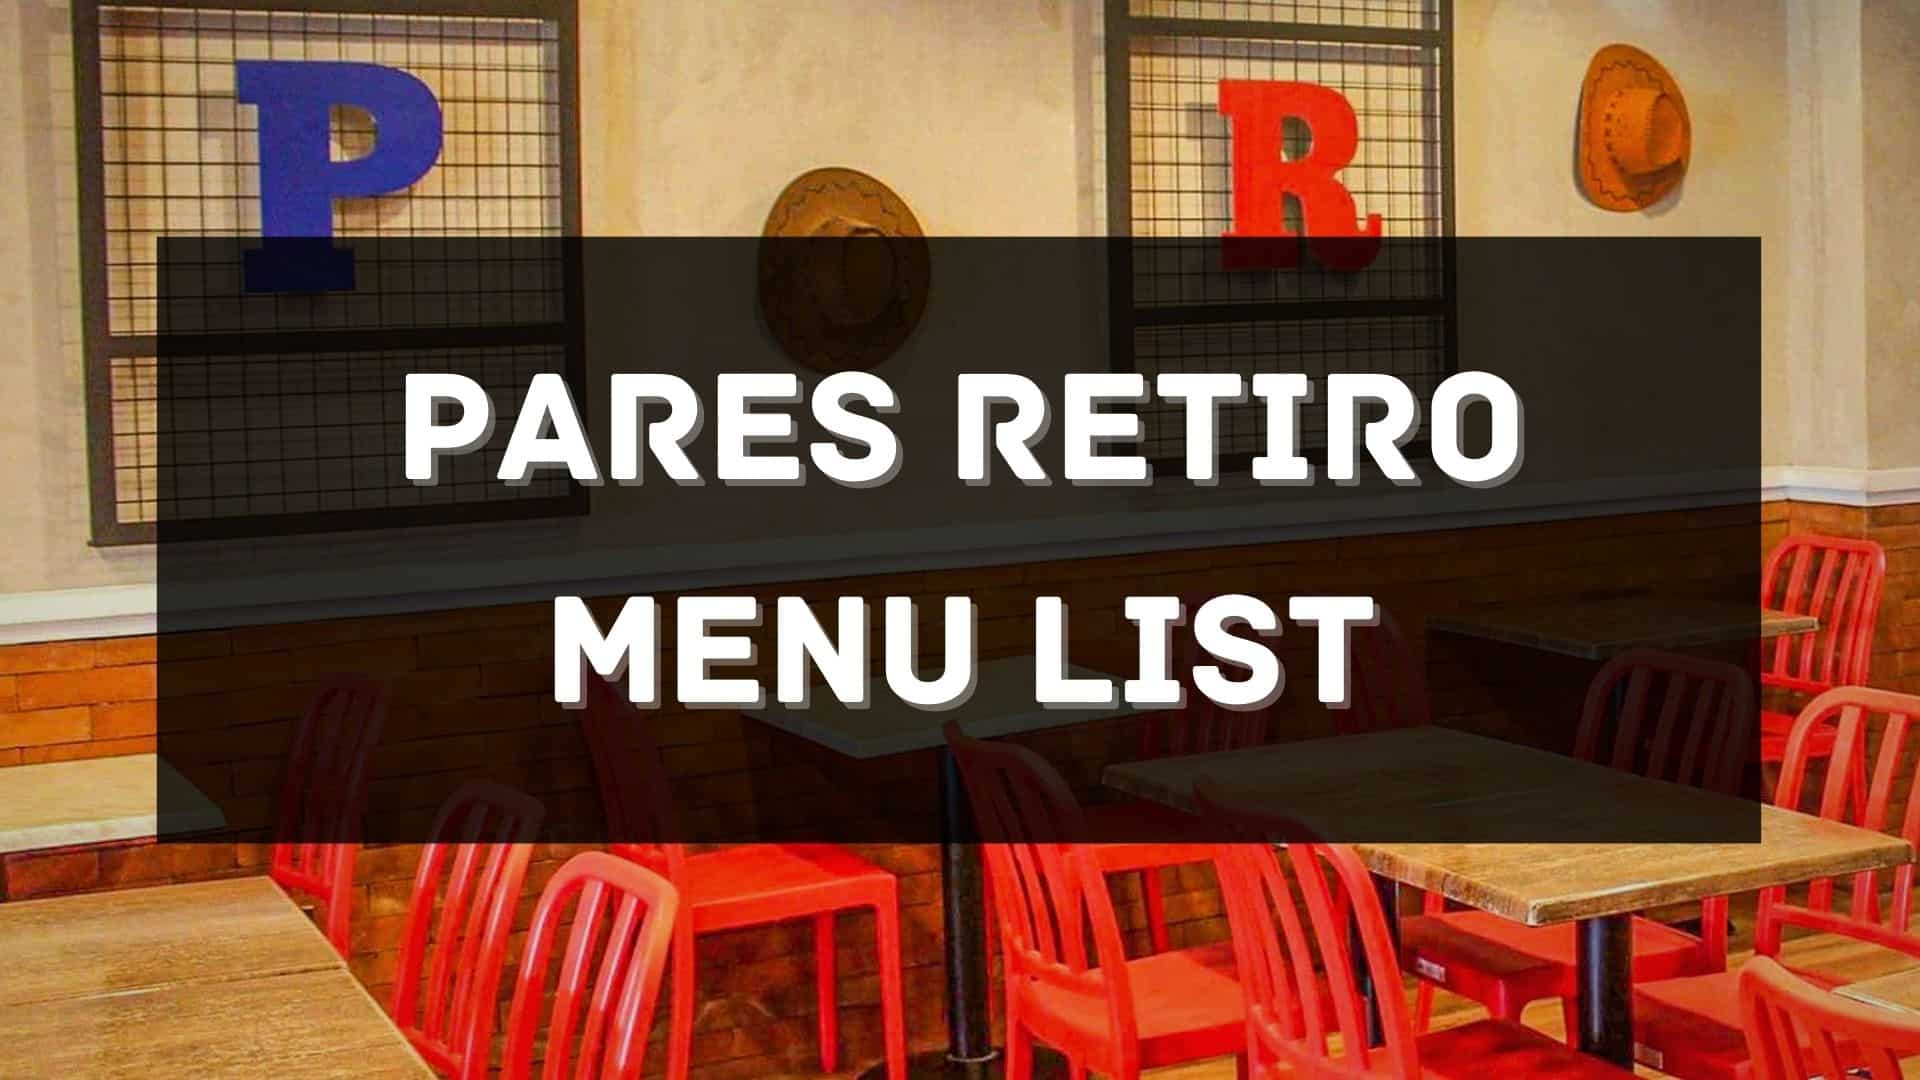 pares retiro menu prices philippines